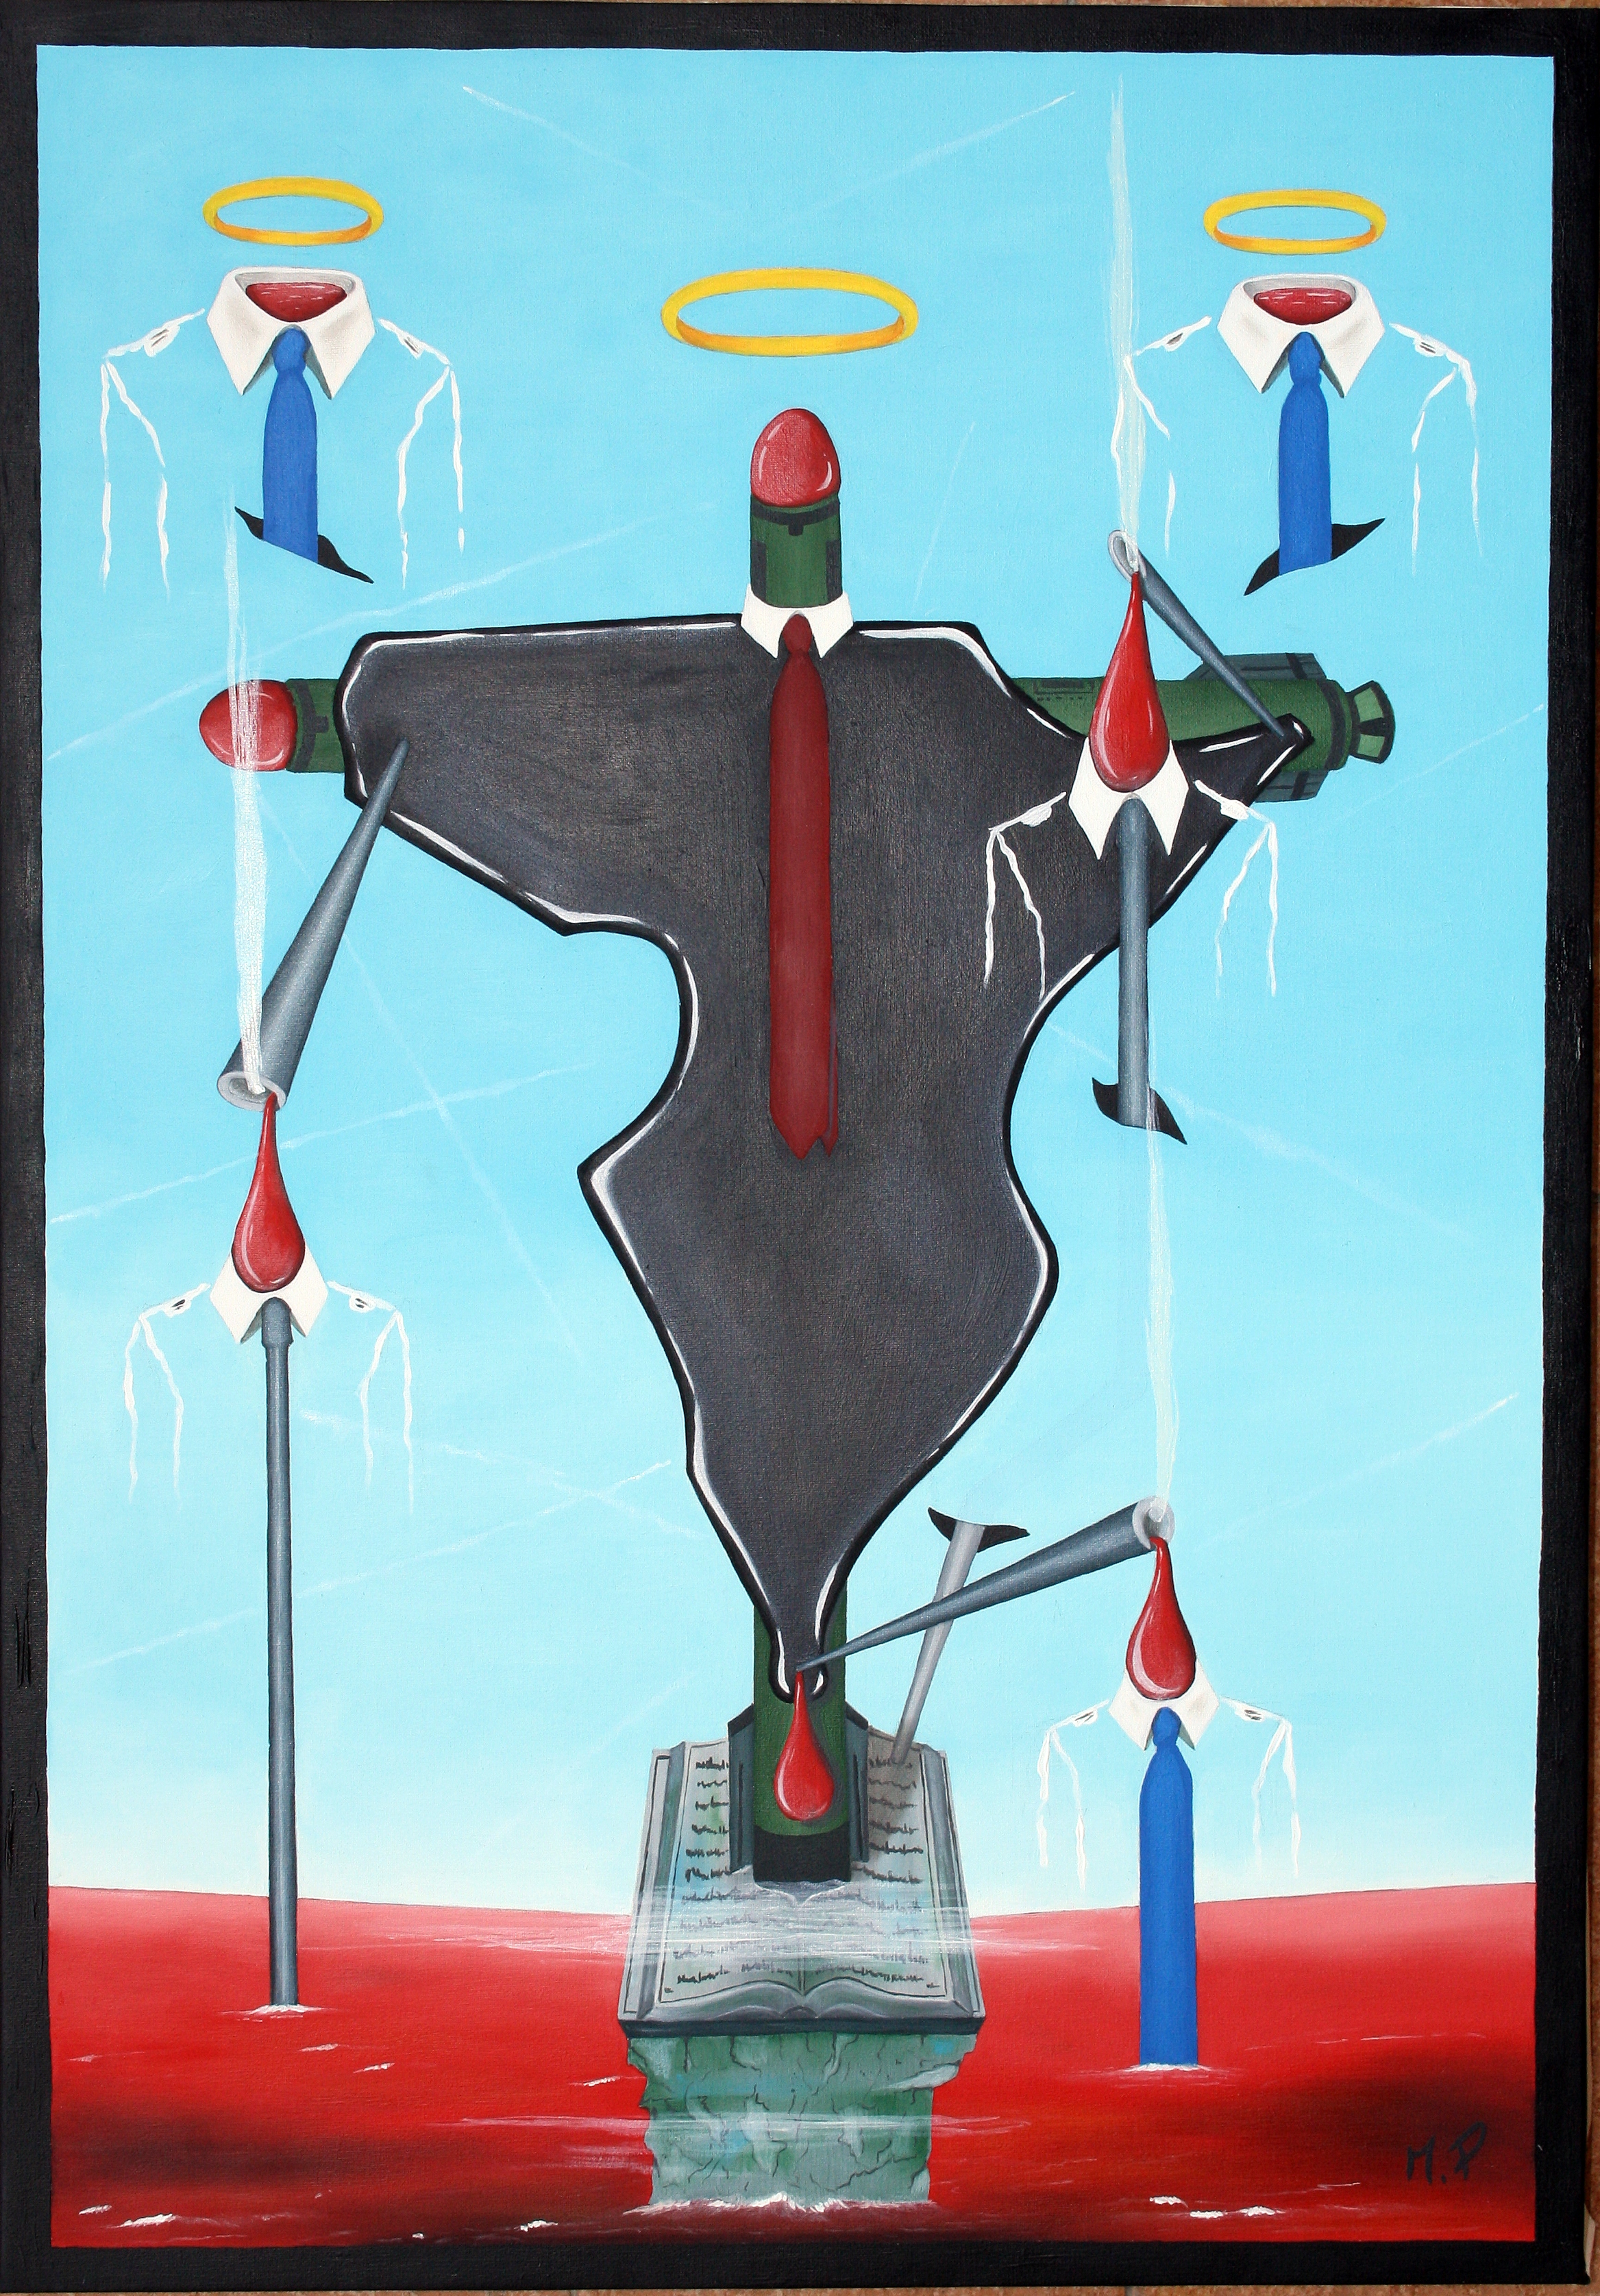 Crocifissione di un continente (Crucifixion of a continent), 2014 dipinto olio su tela (painting oil on canvas) cm 35x50, Pasquale Mastrogiacomo, Acerno (SA).